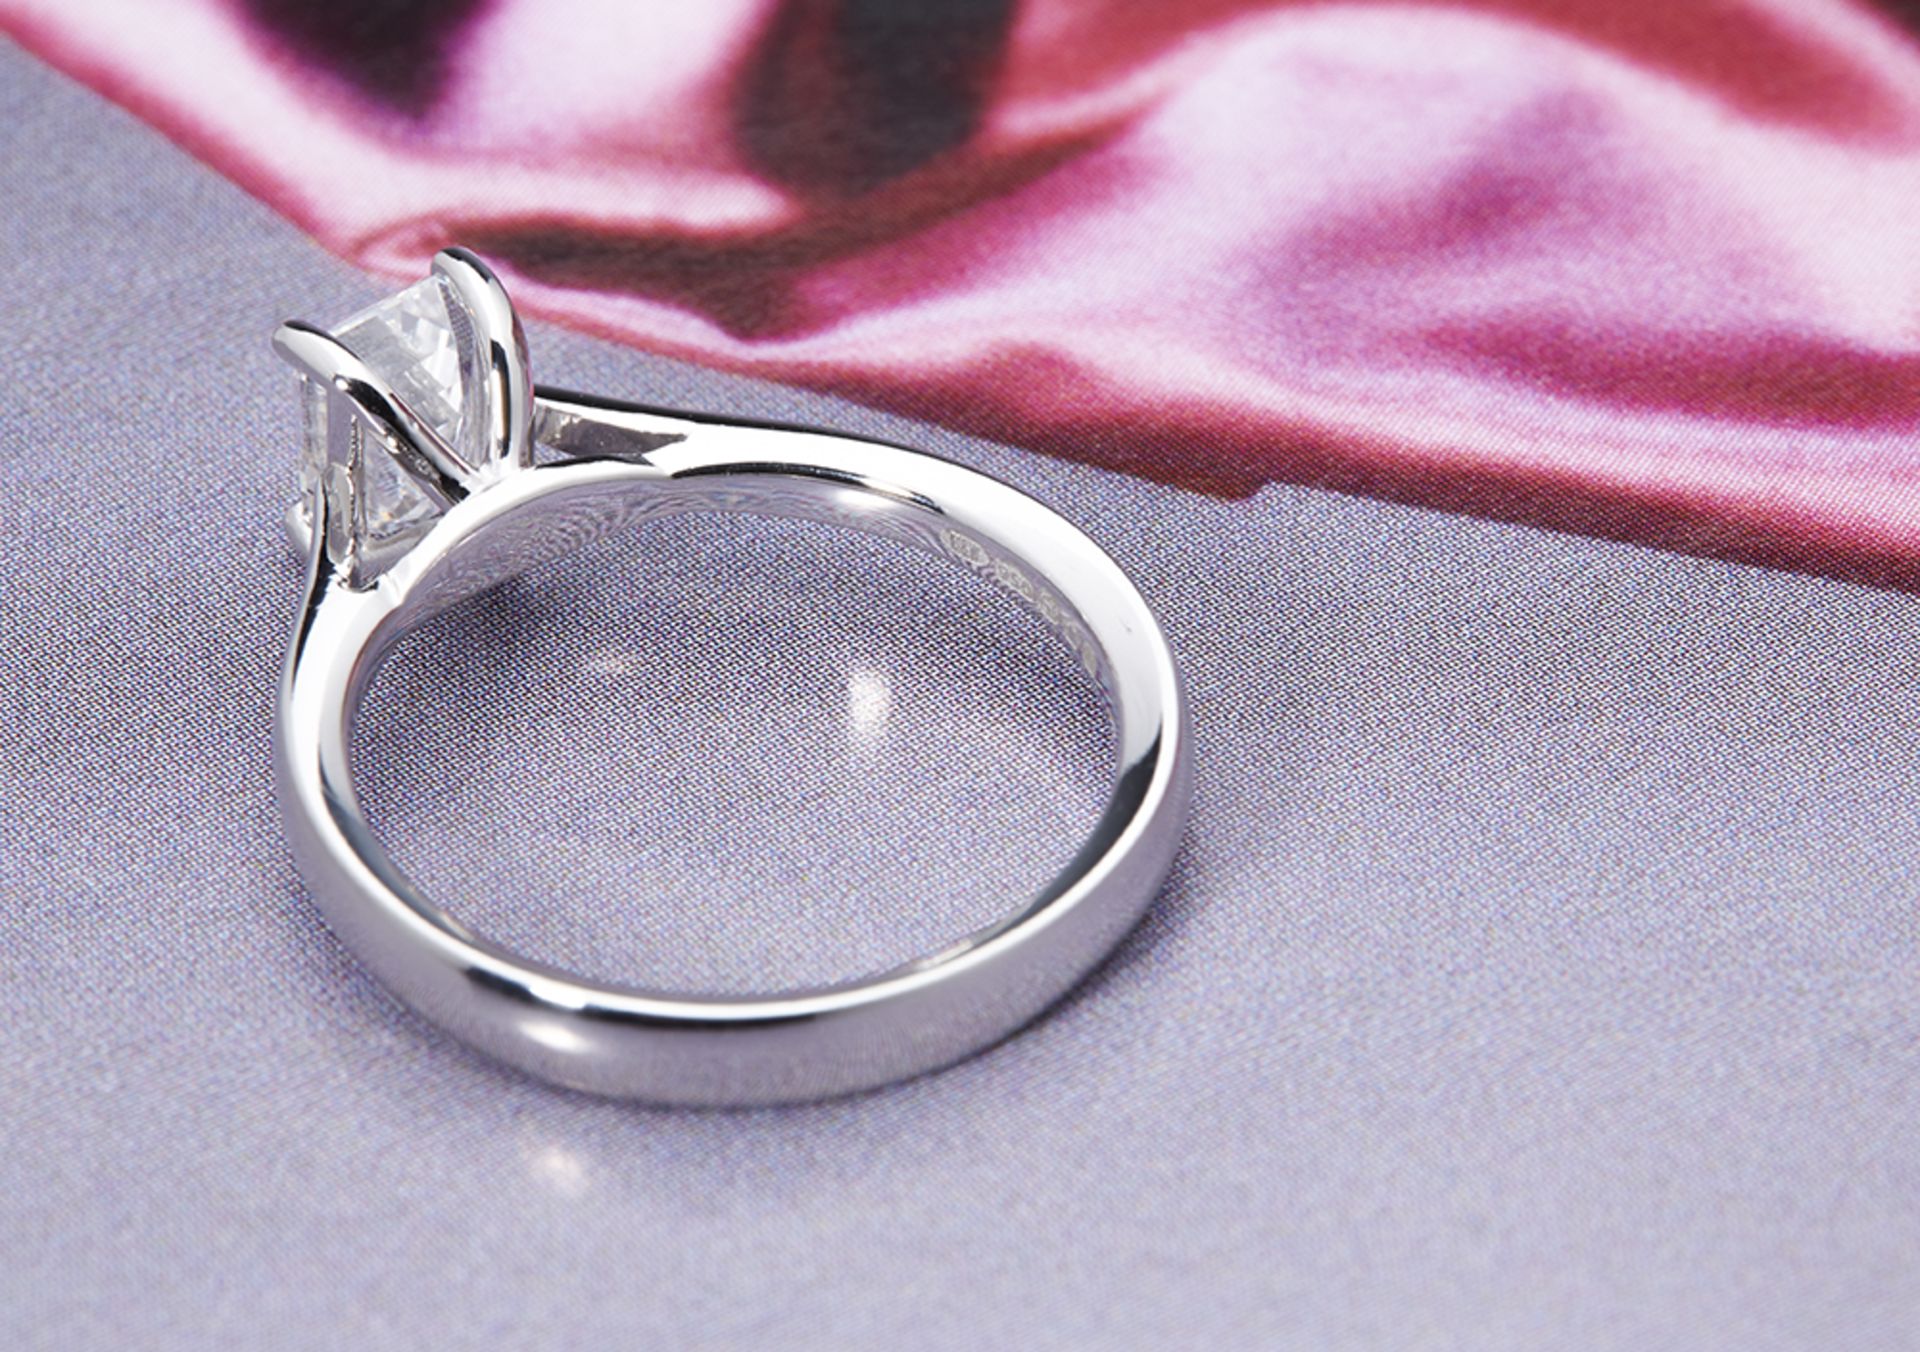 Platinum Emerald Cut 1.05ct Diamond Ring - Image 3 of 5